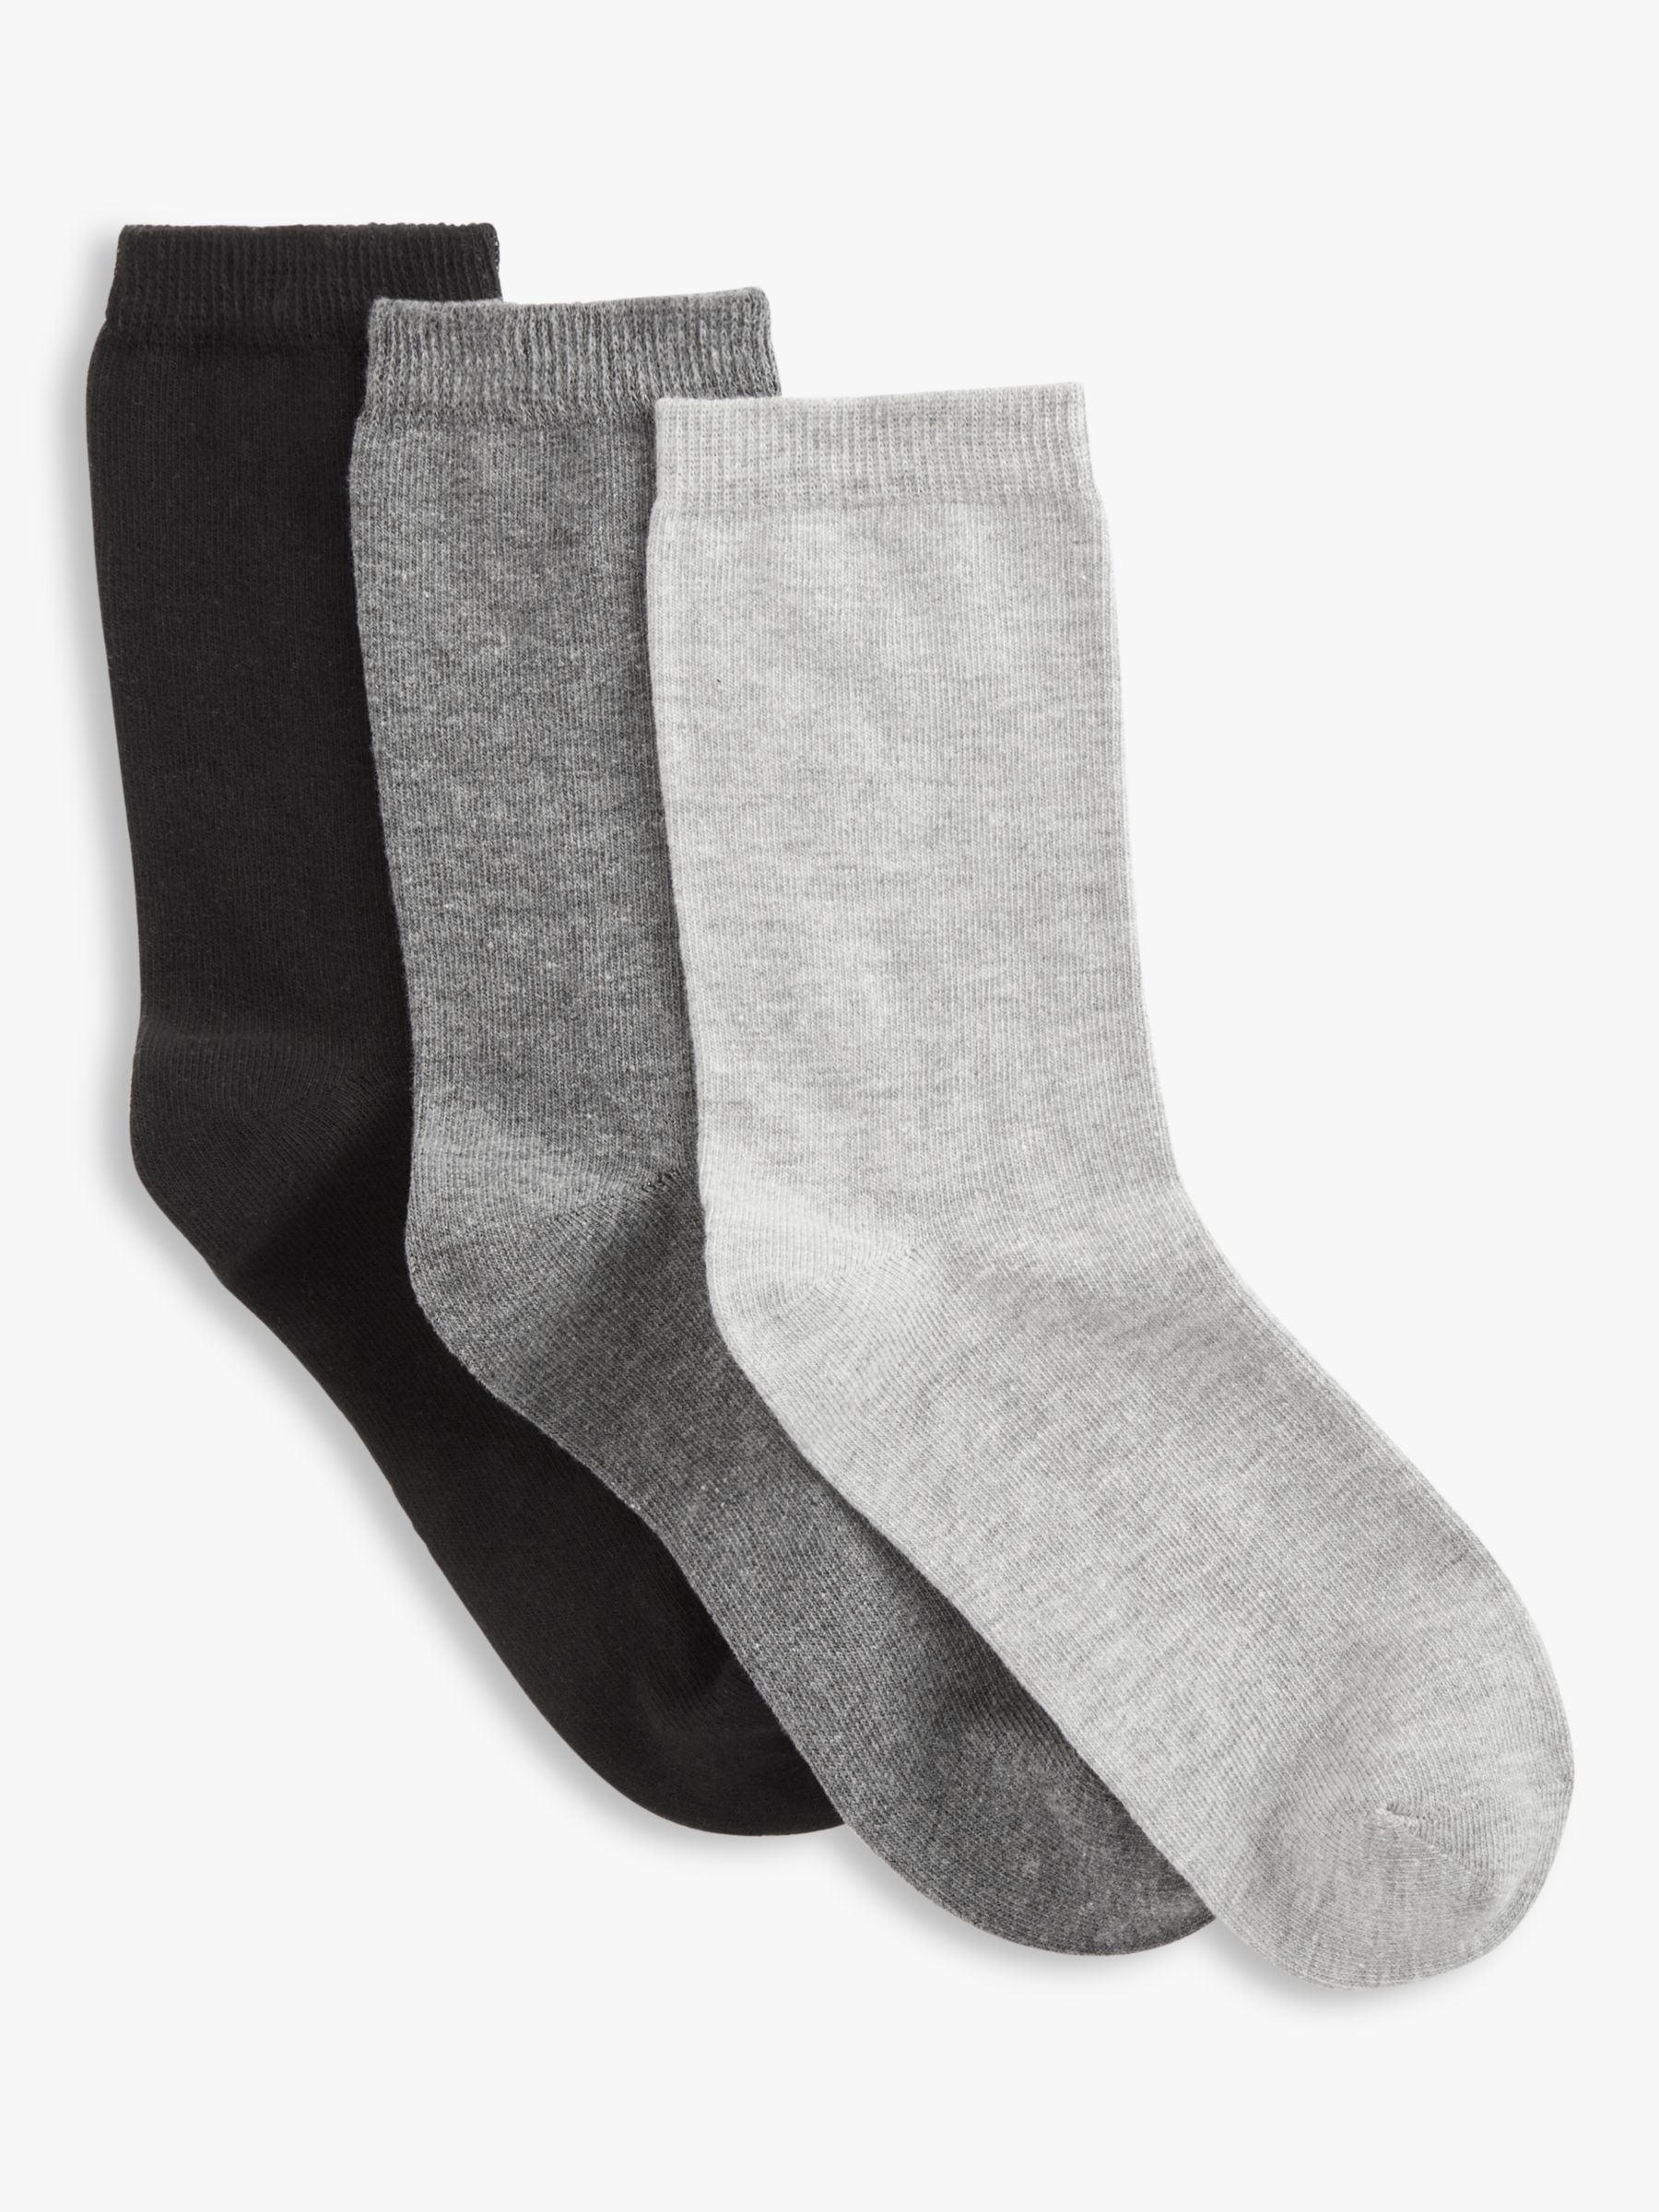 John Lewis Ankle Socks, Pack of 3, Mono